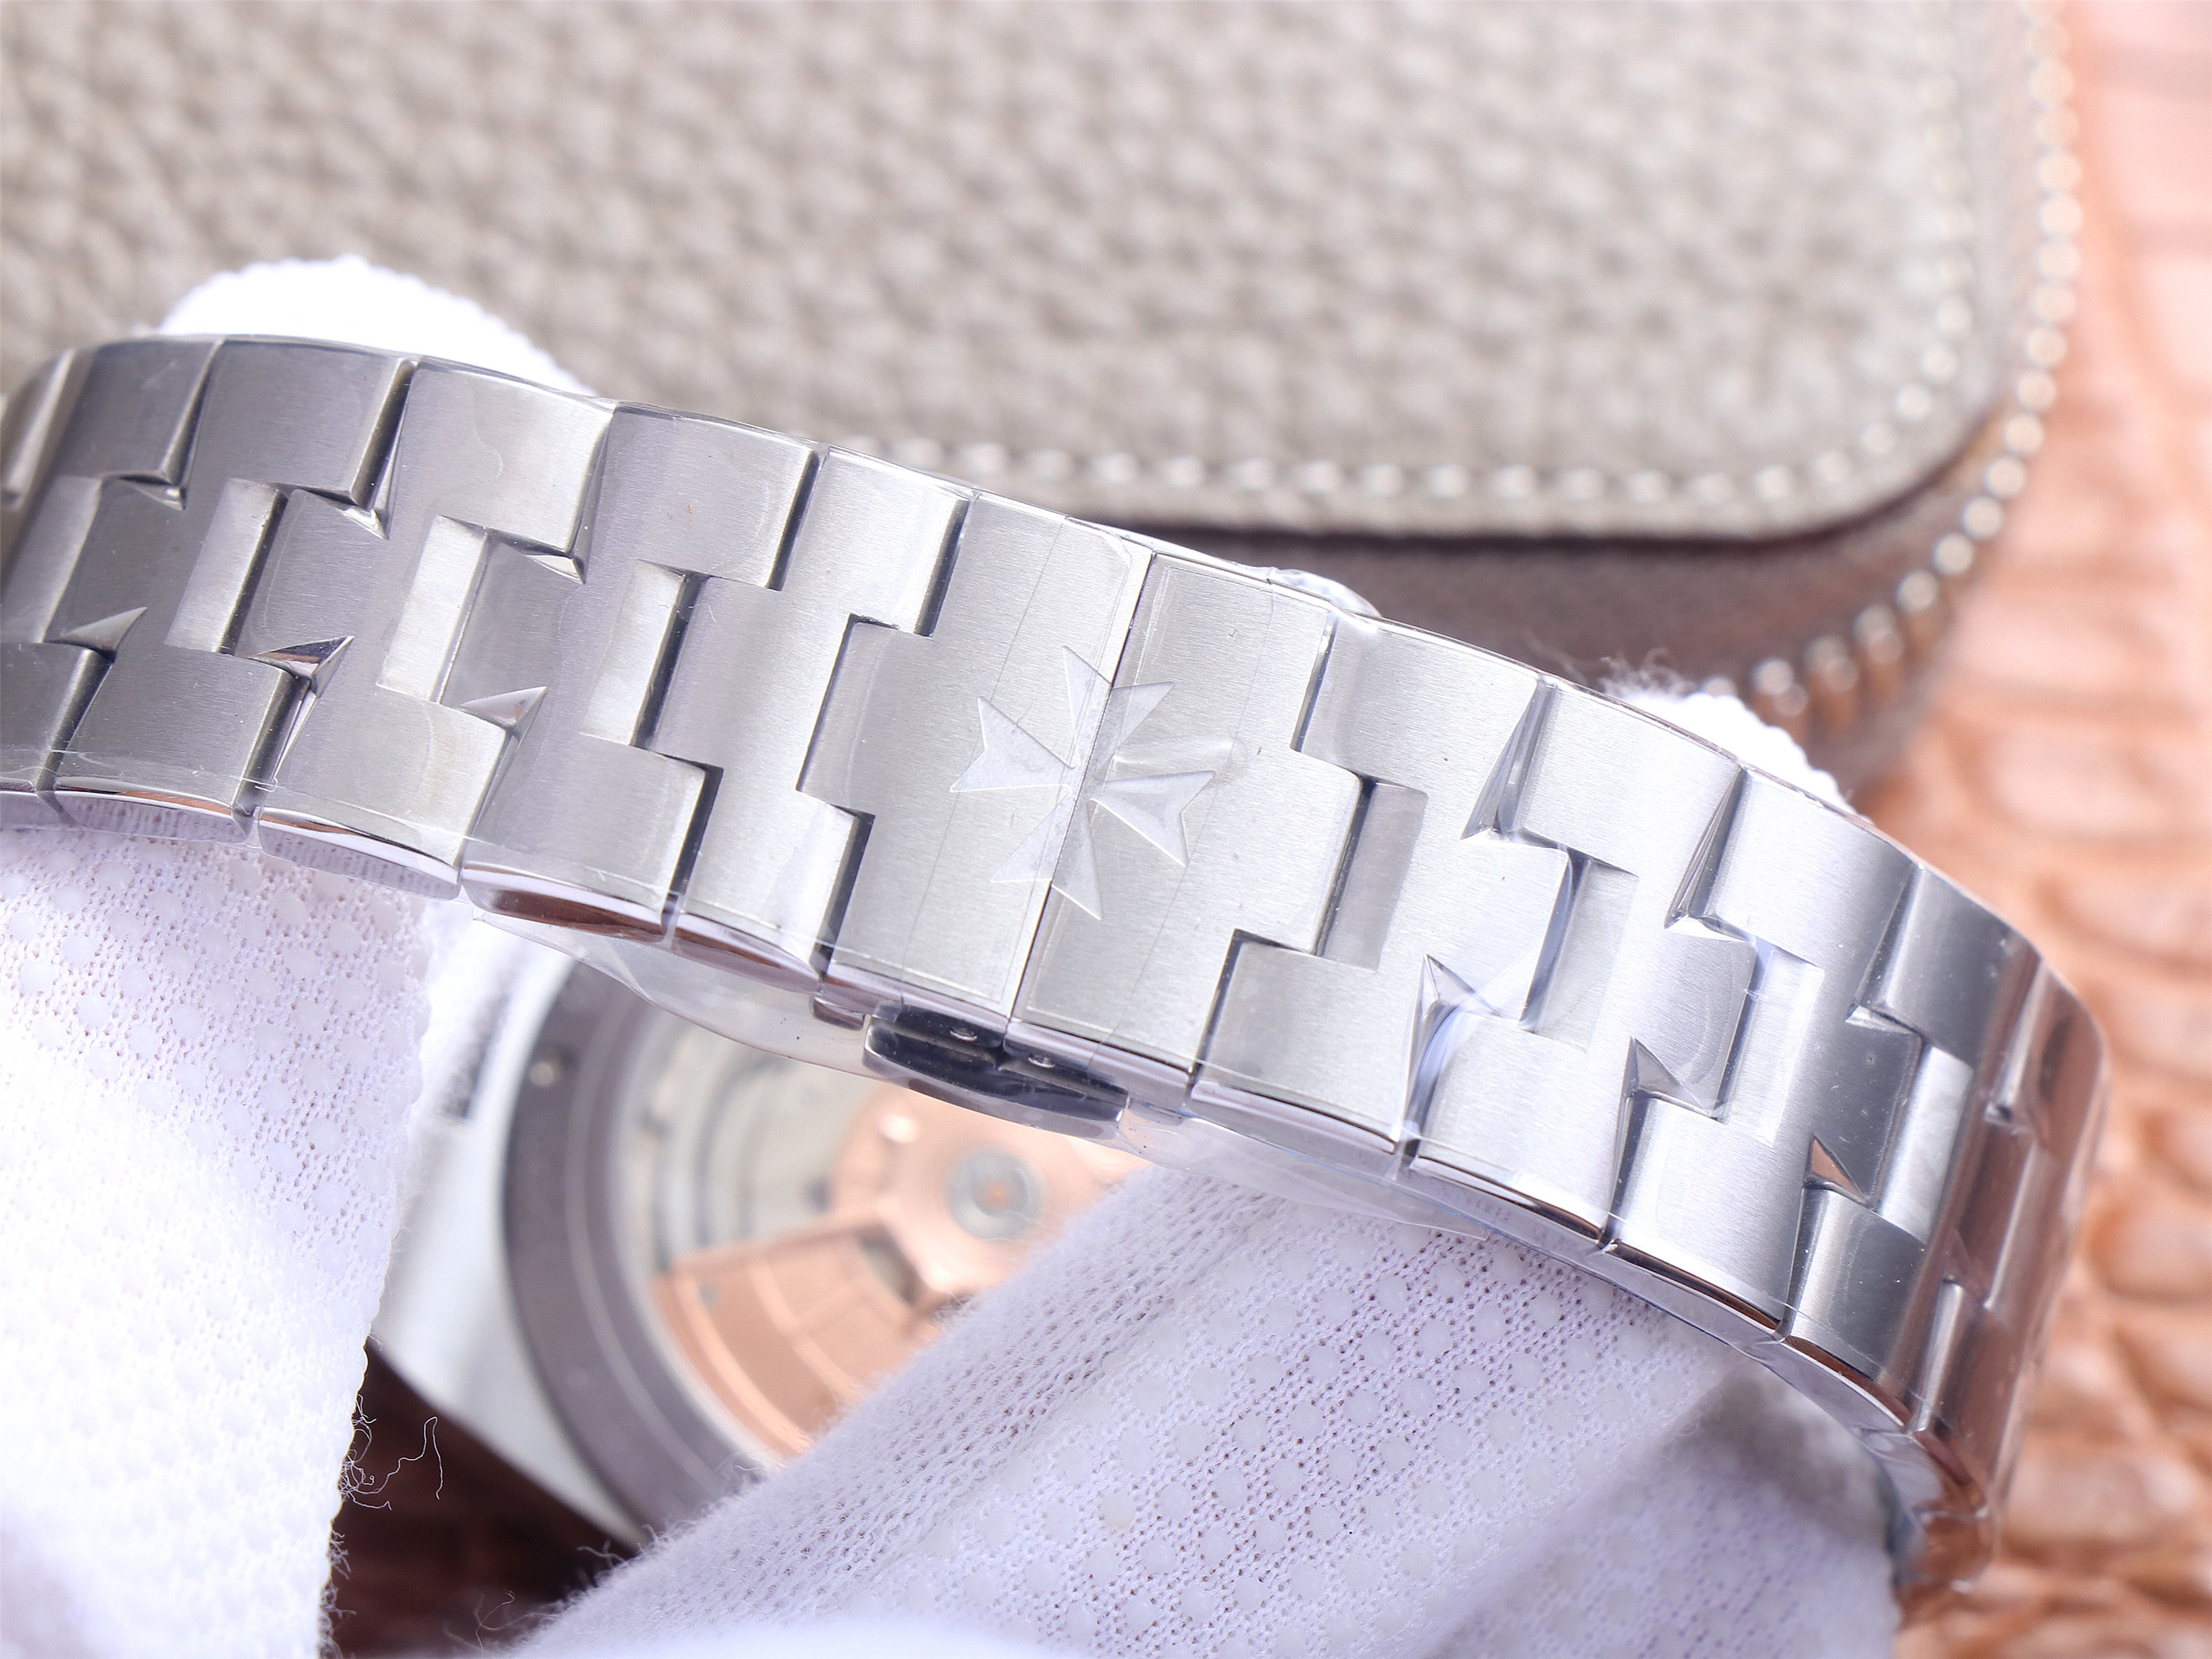 江詩丹頓縱橫四海一比一一比一高仿 xf廠出品江詩丹頓2000V/120G-B122 灰盤￥4580-復刻手錶